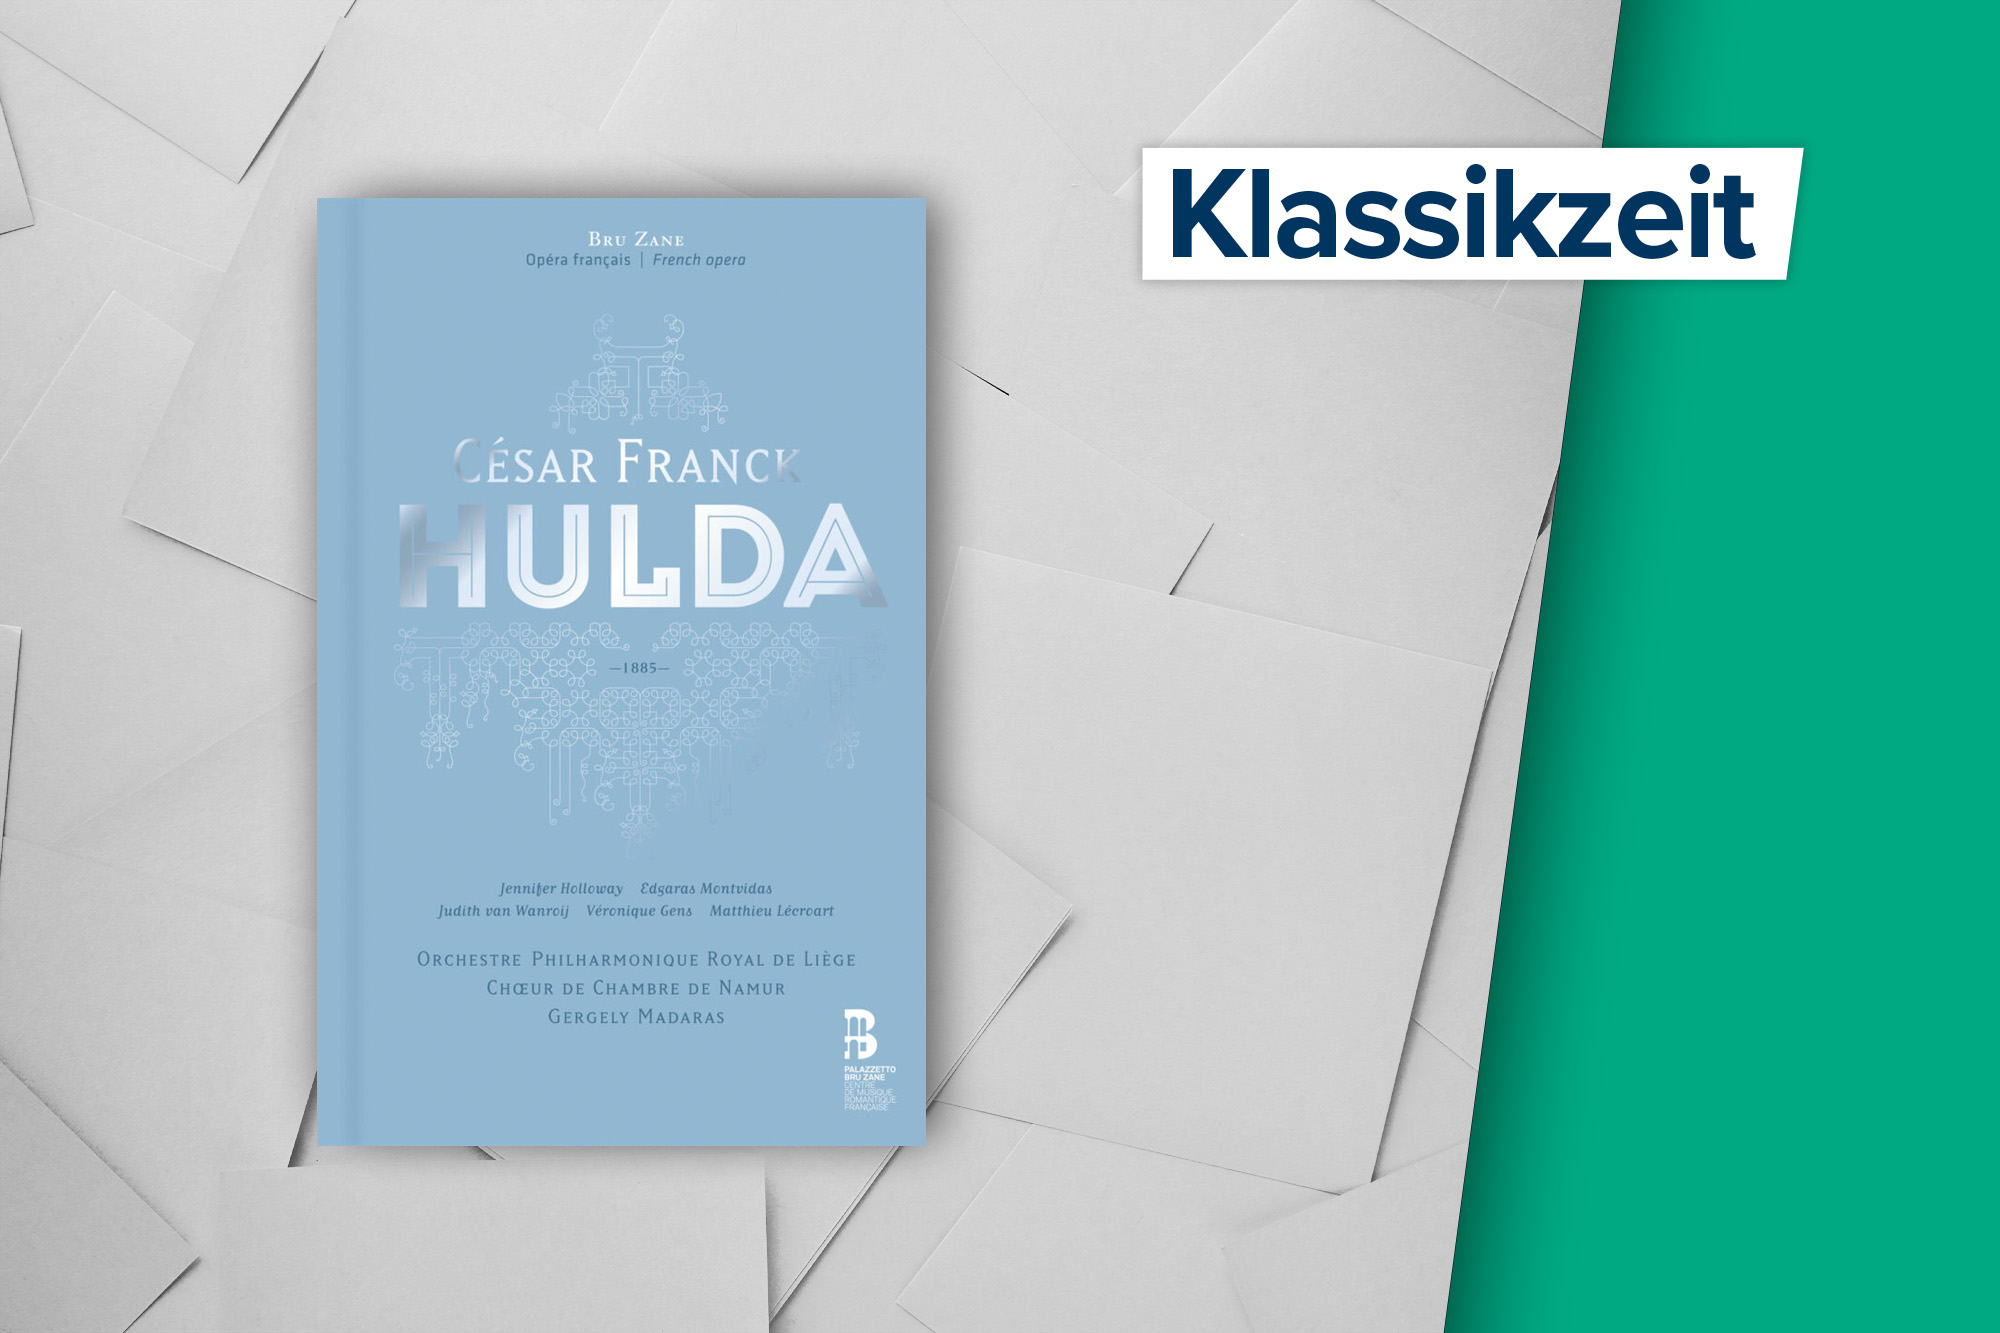 CD-Box der Lütticher Philharmoniker zur Oper "Hulda" von César Franck (Bild: Bru Zane Label)